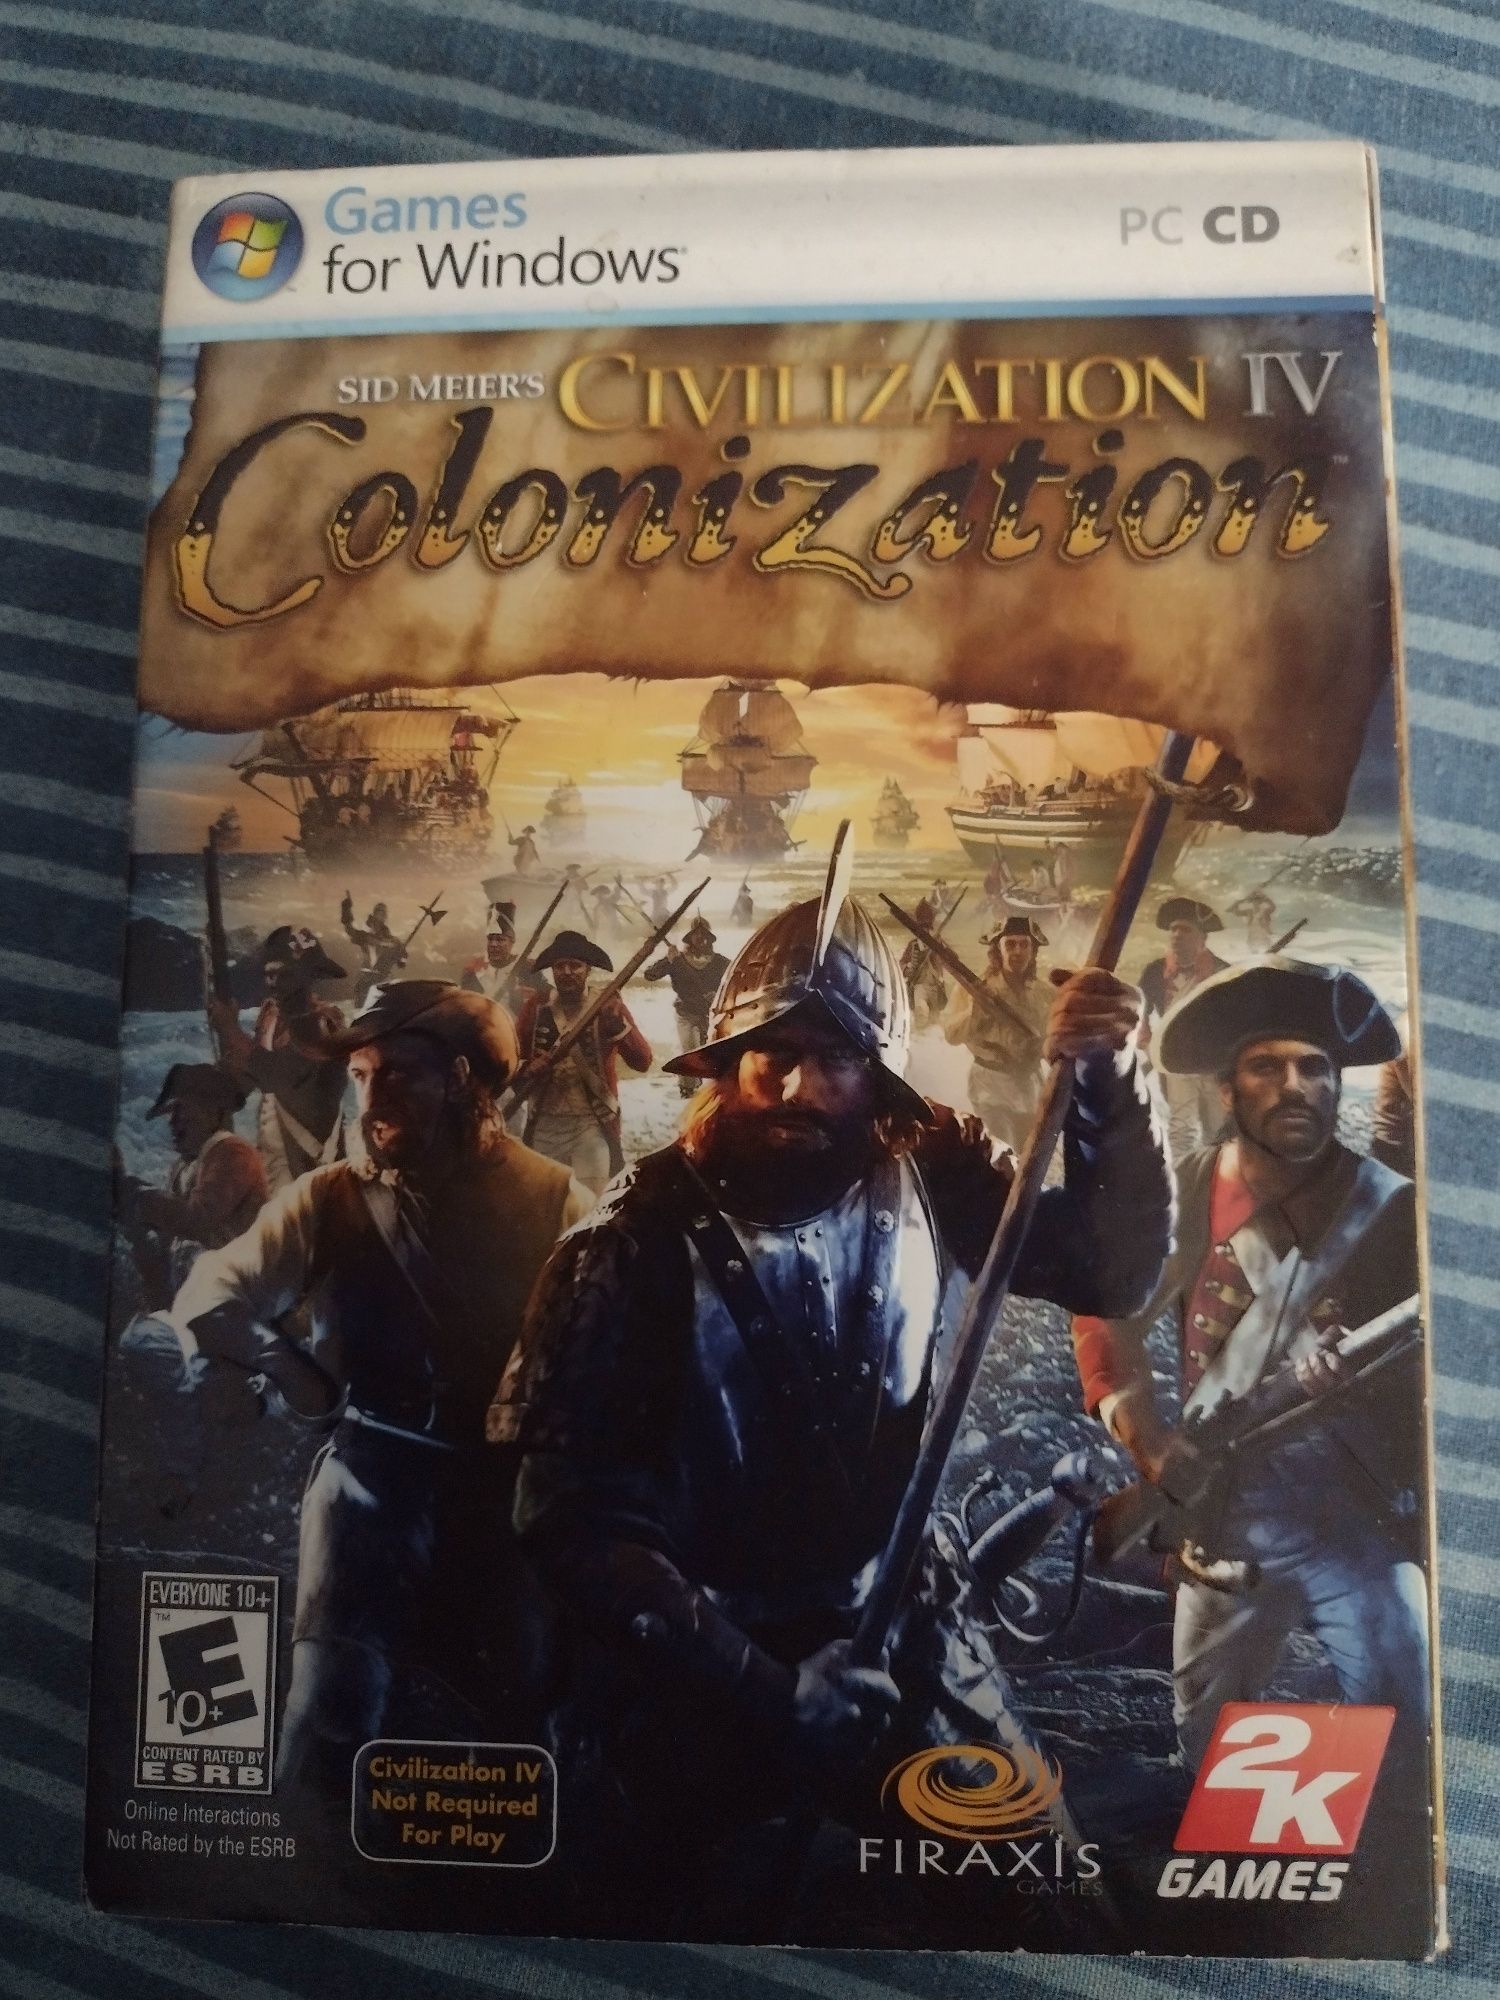 Civilization lV Colonization